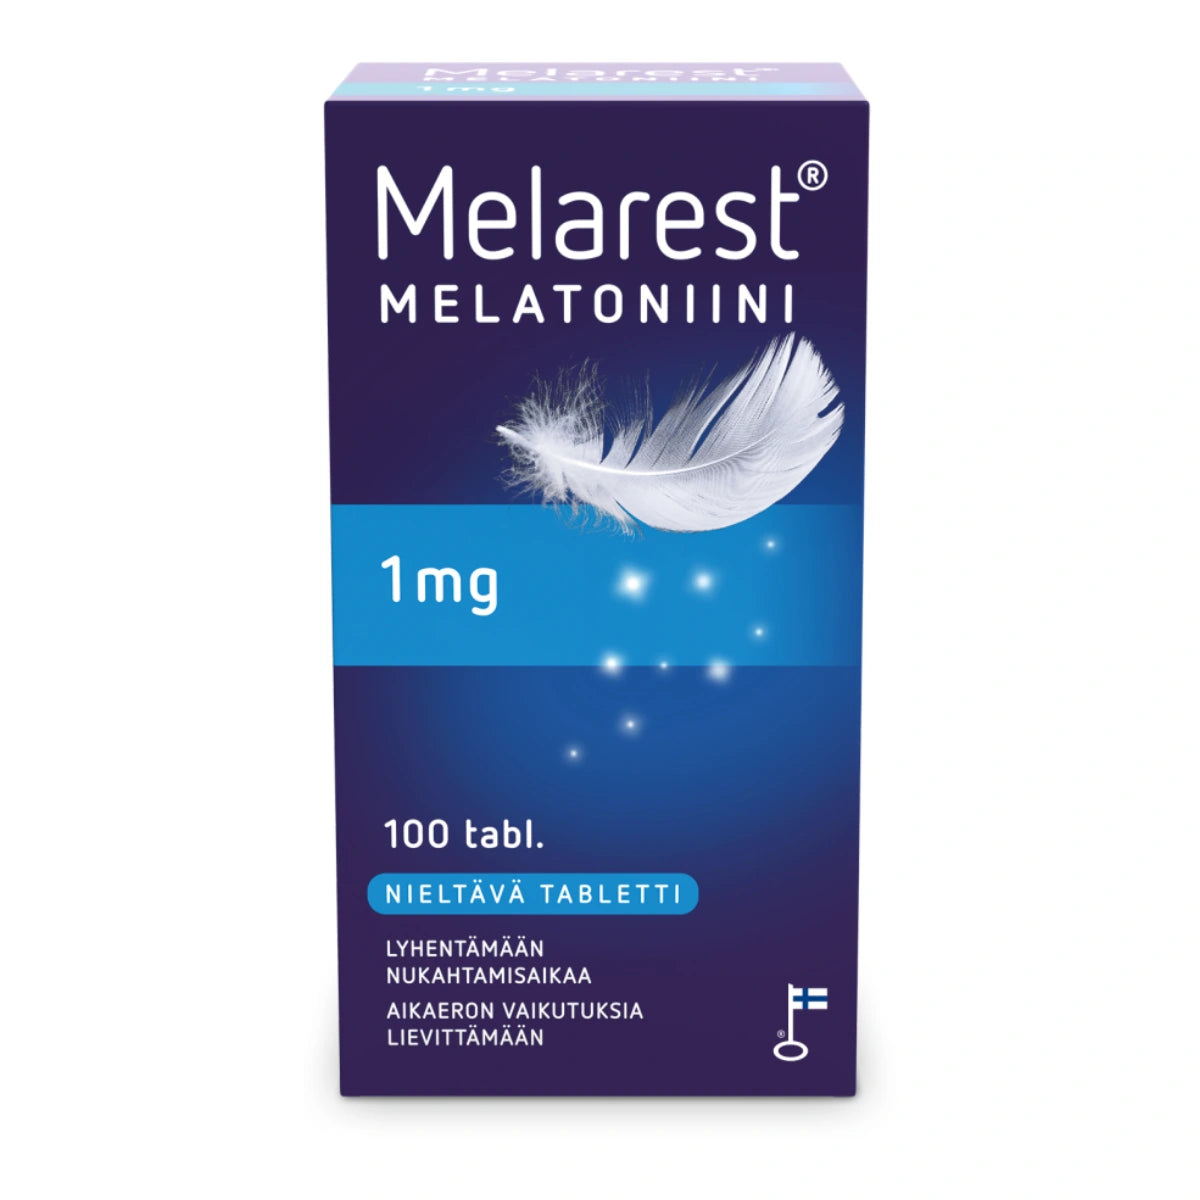 MELAREST Melatoniini 1 mg nieltävä tabletti 100 kpl lyhentämään nukahtamisaikaa